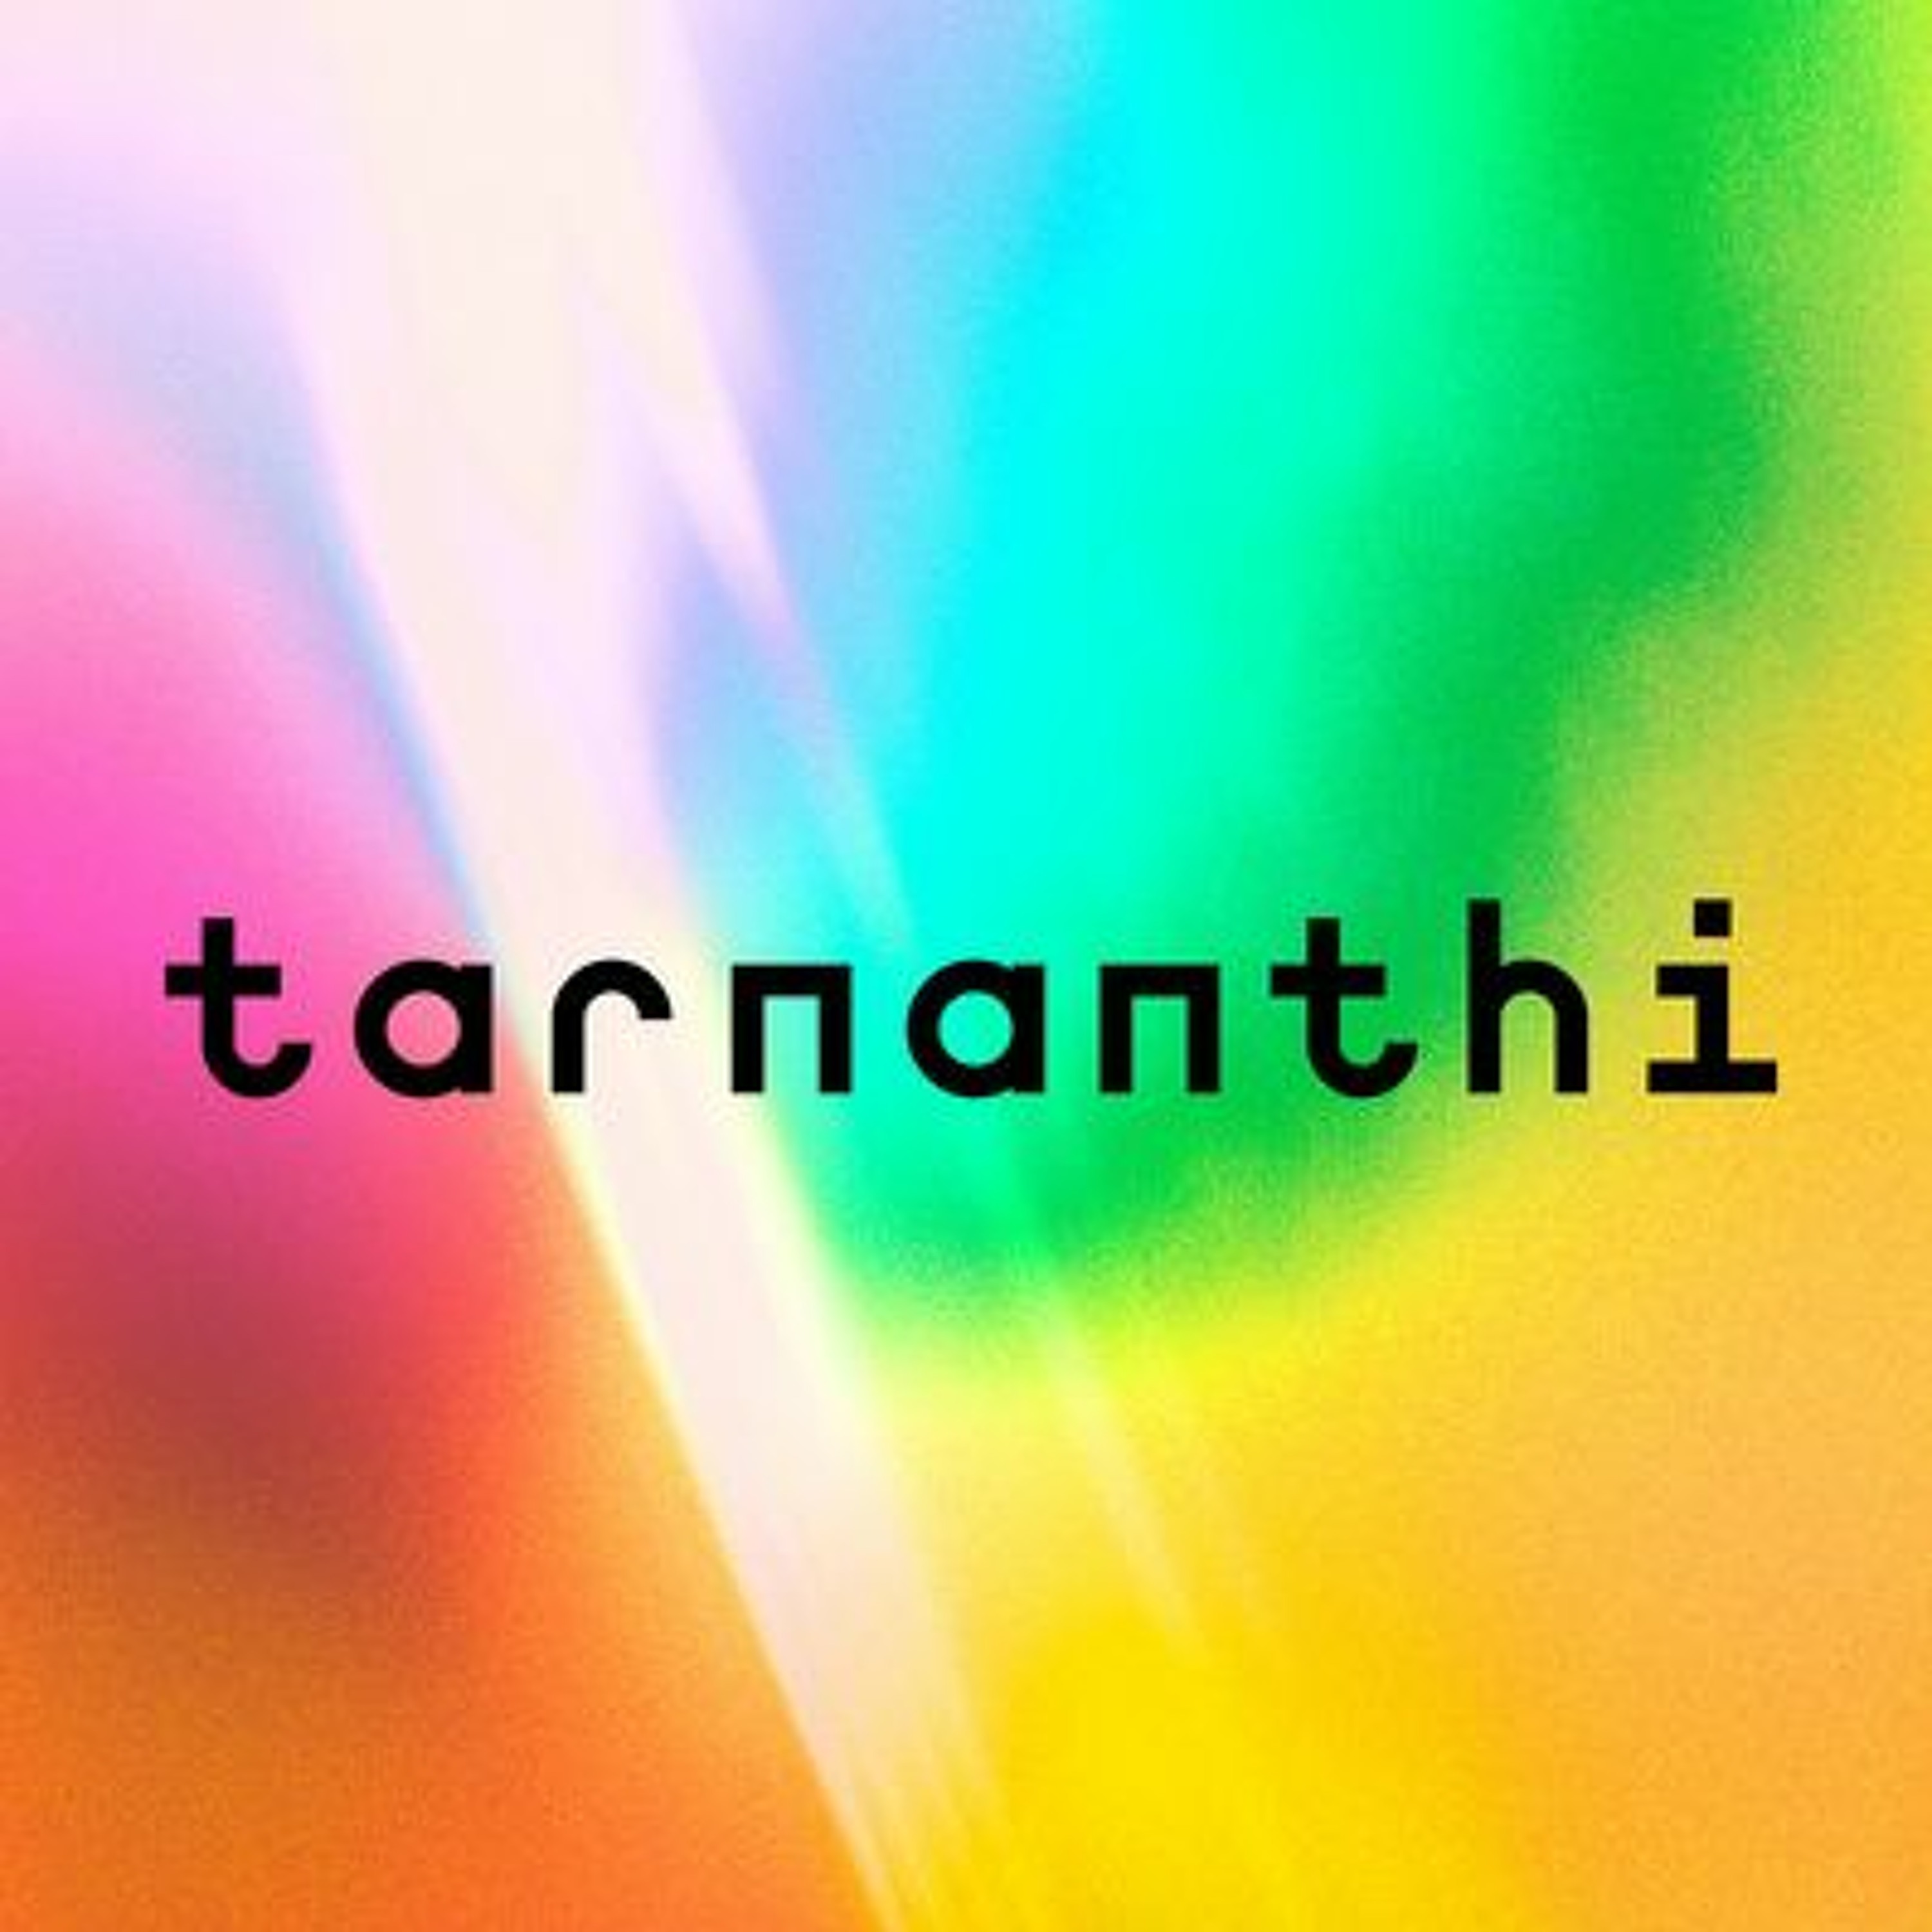 Tarnanthi Artist Interview: Nathan Thomas